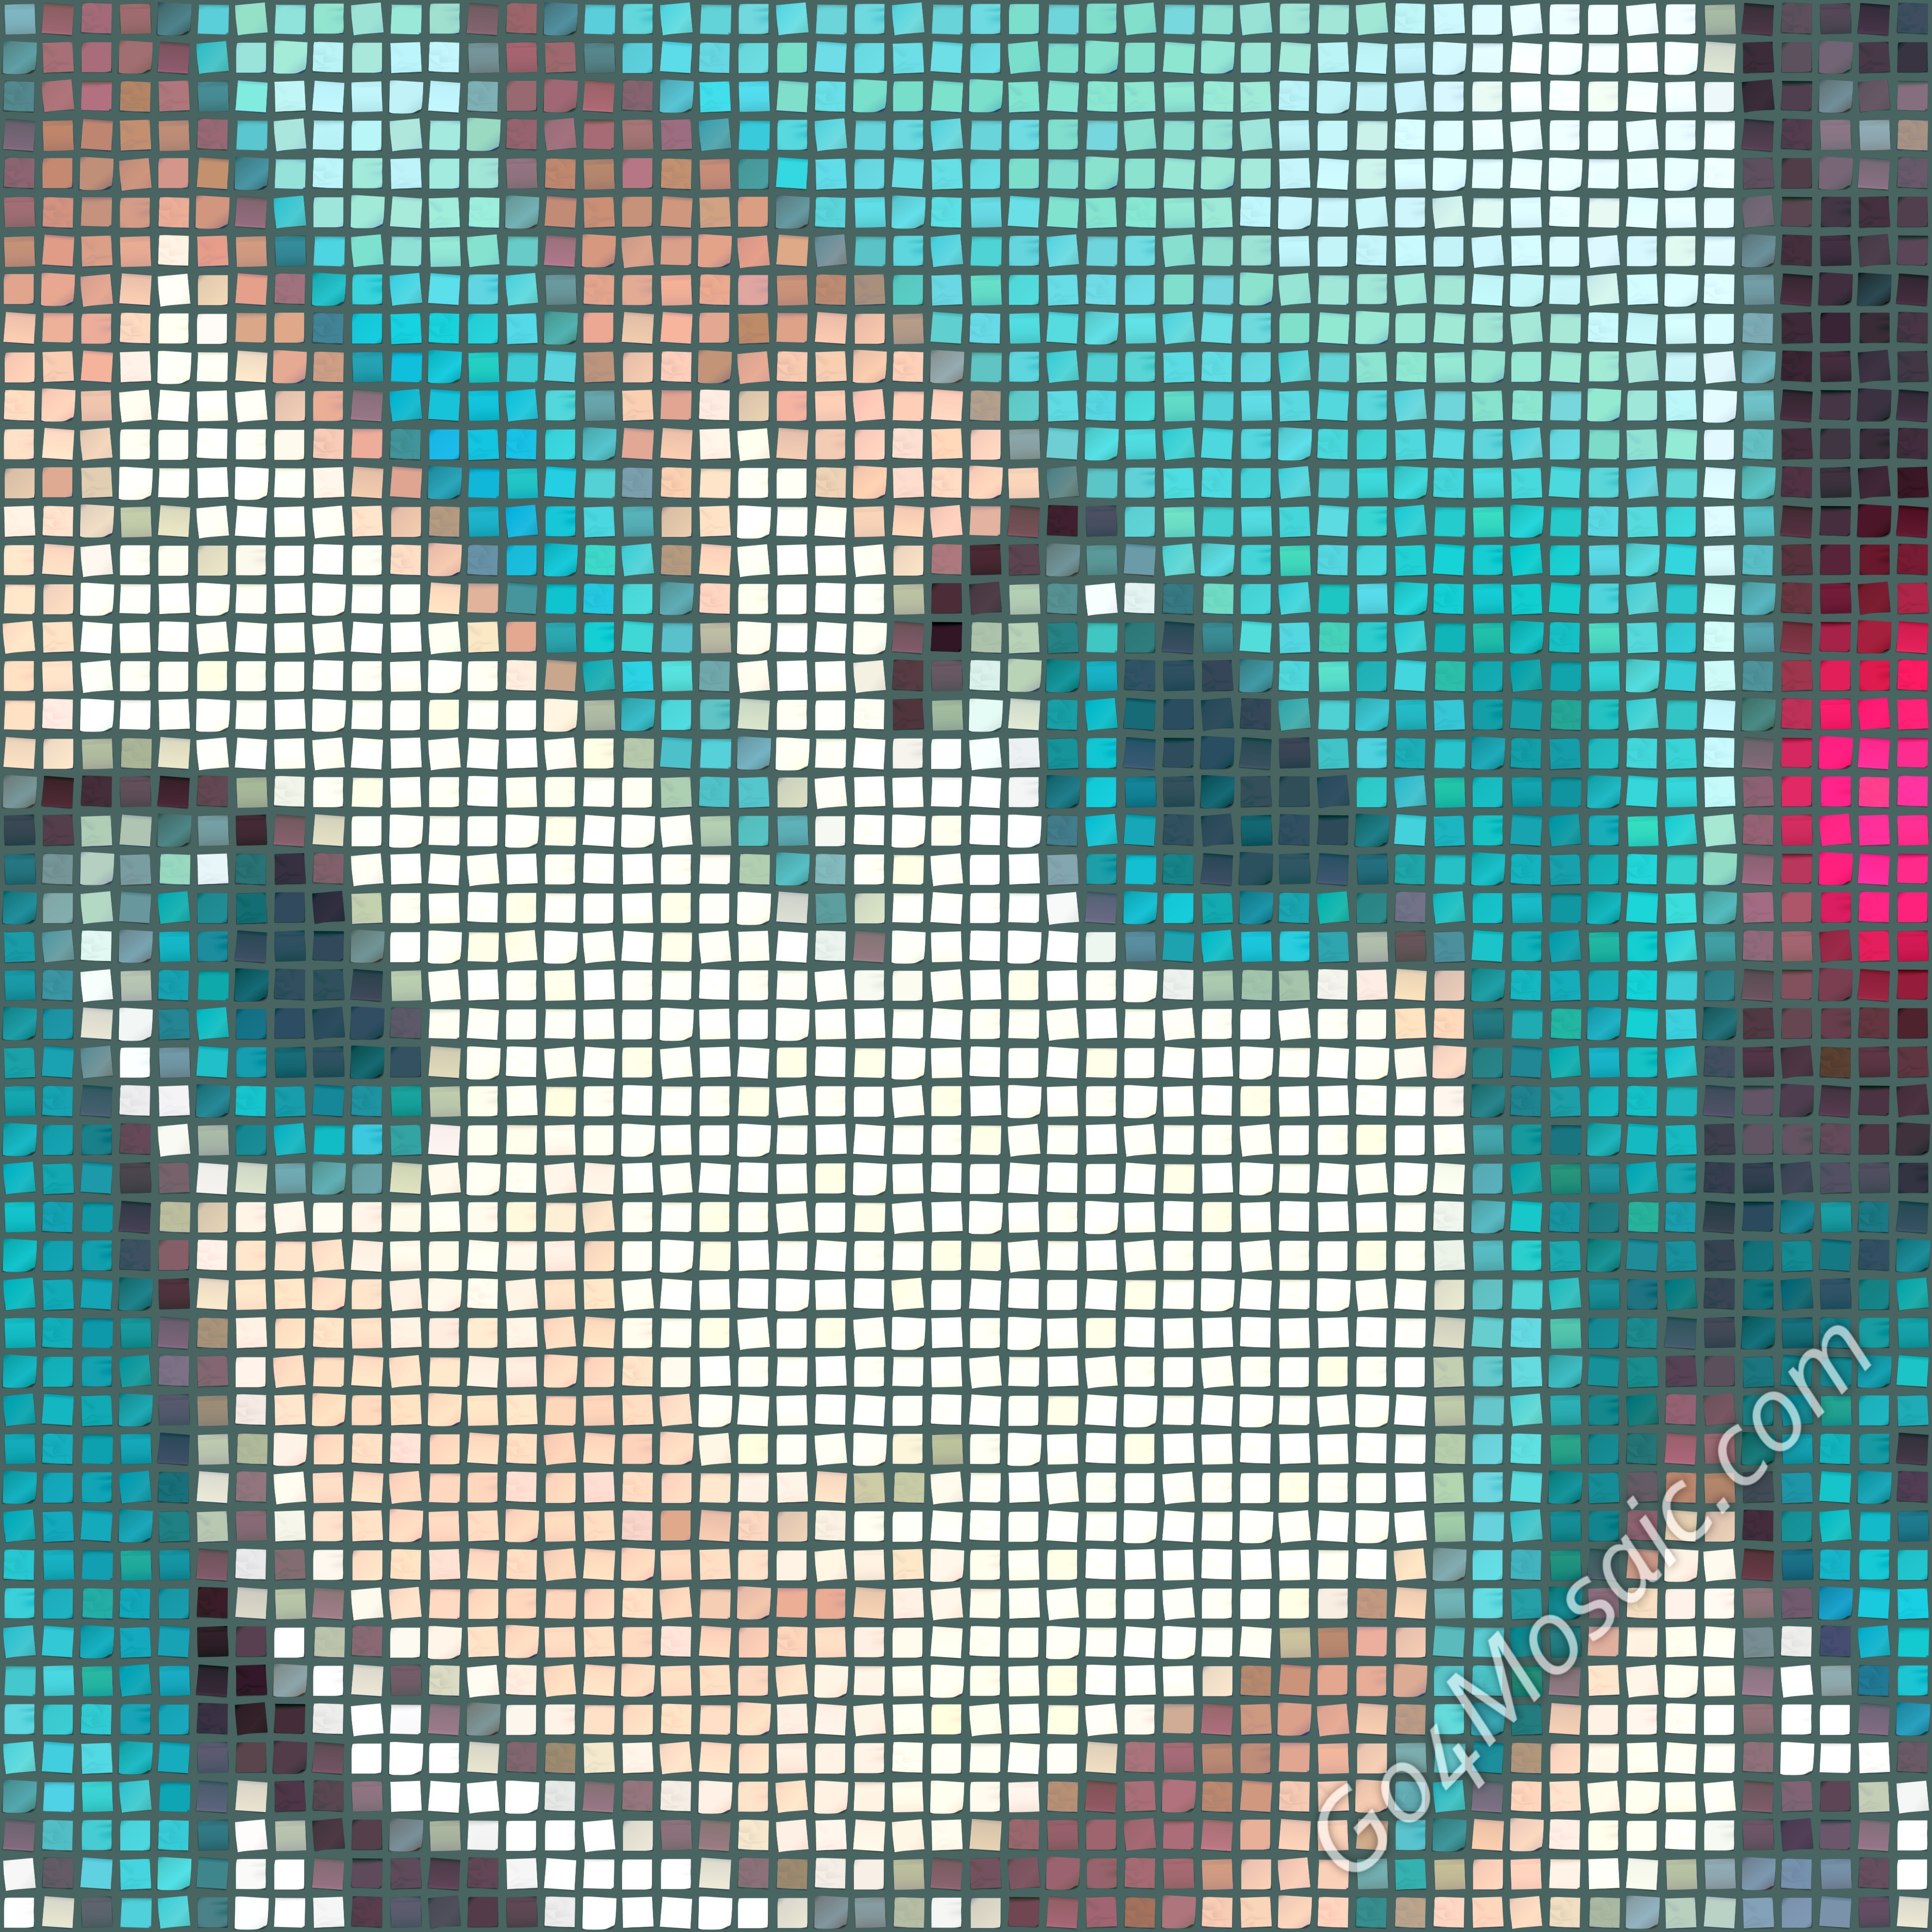 Hatsune Miku mosaic from Postits